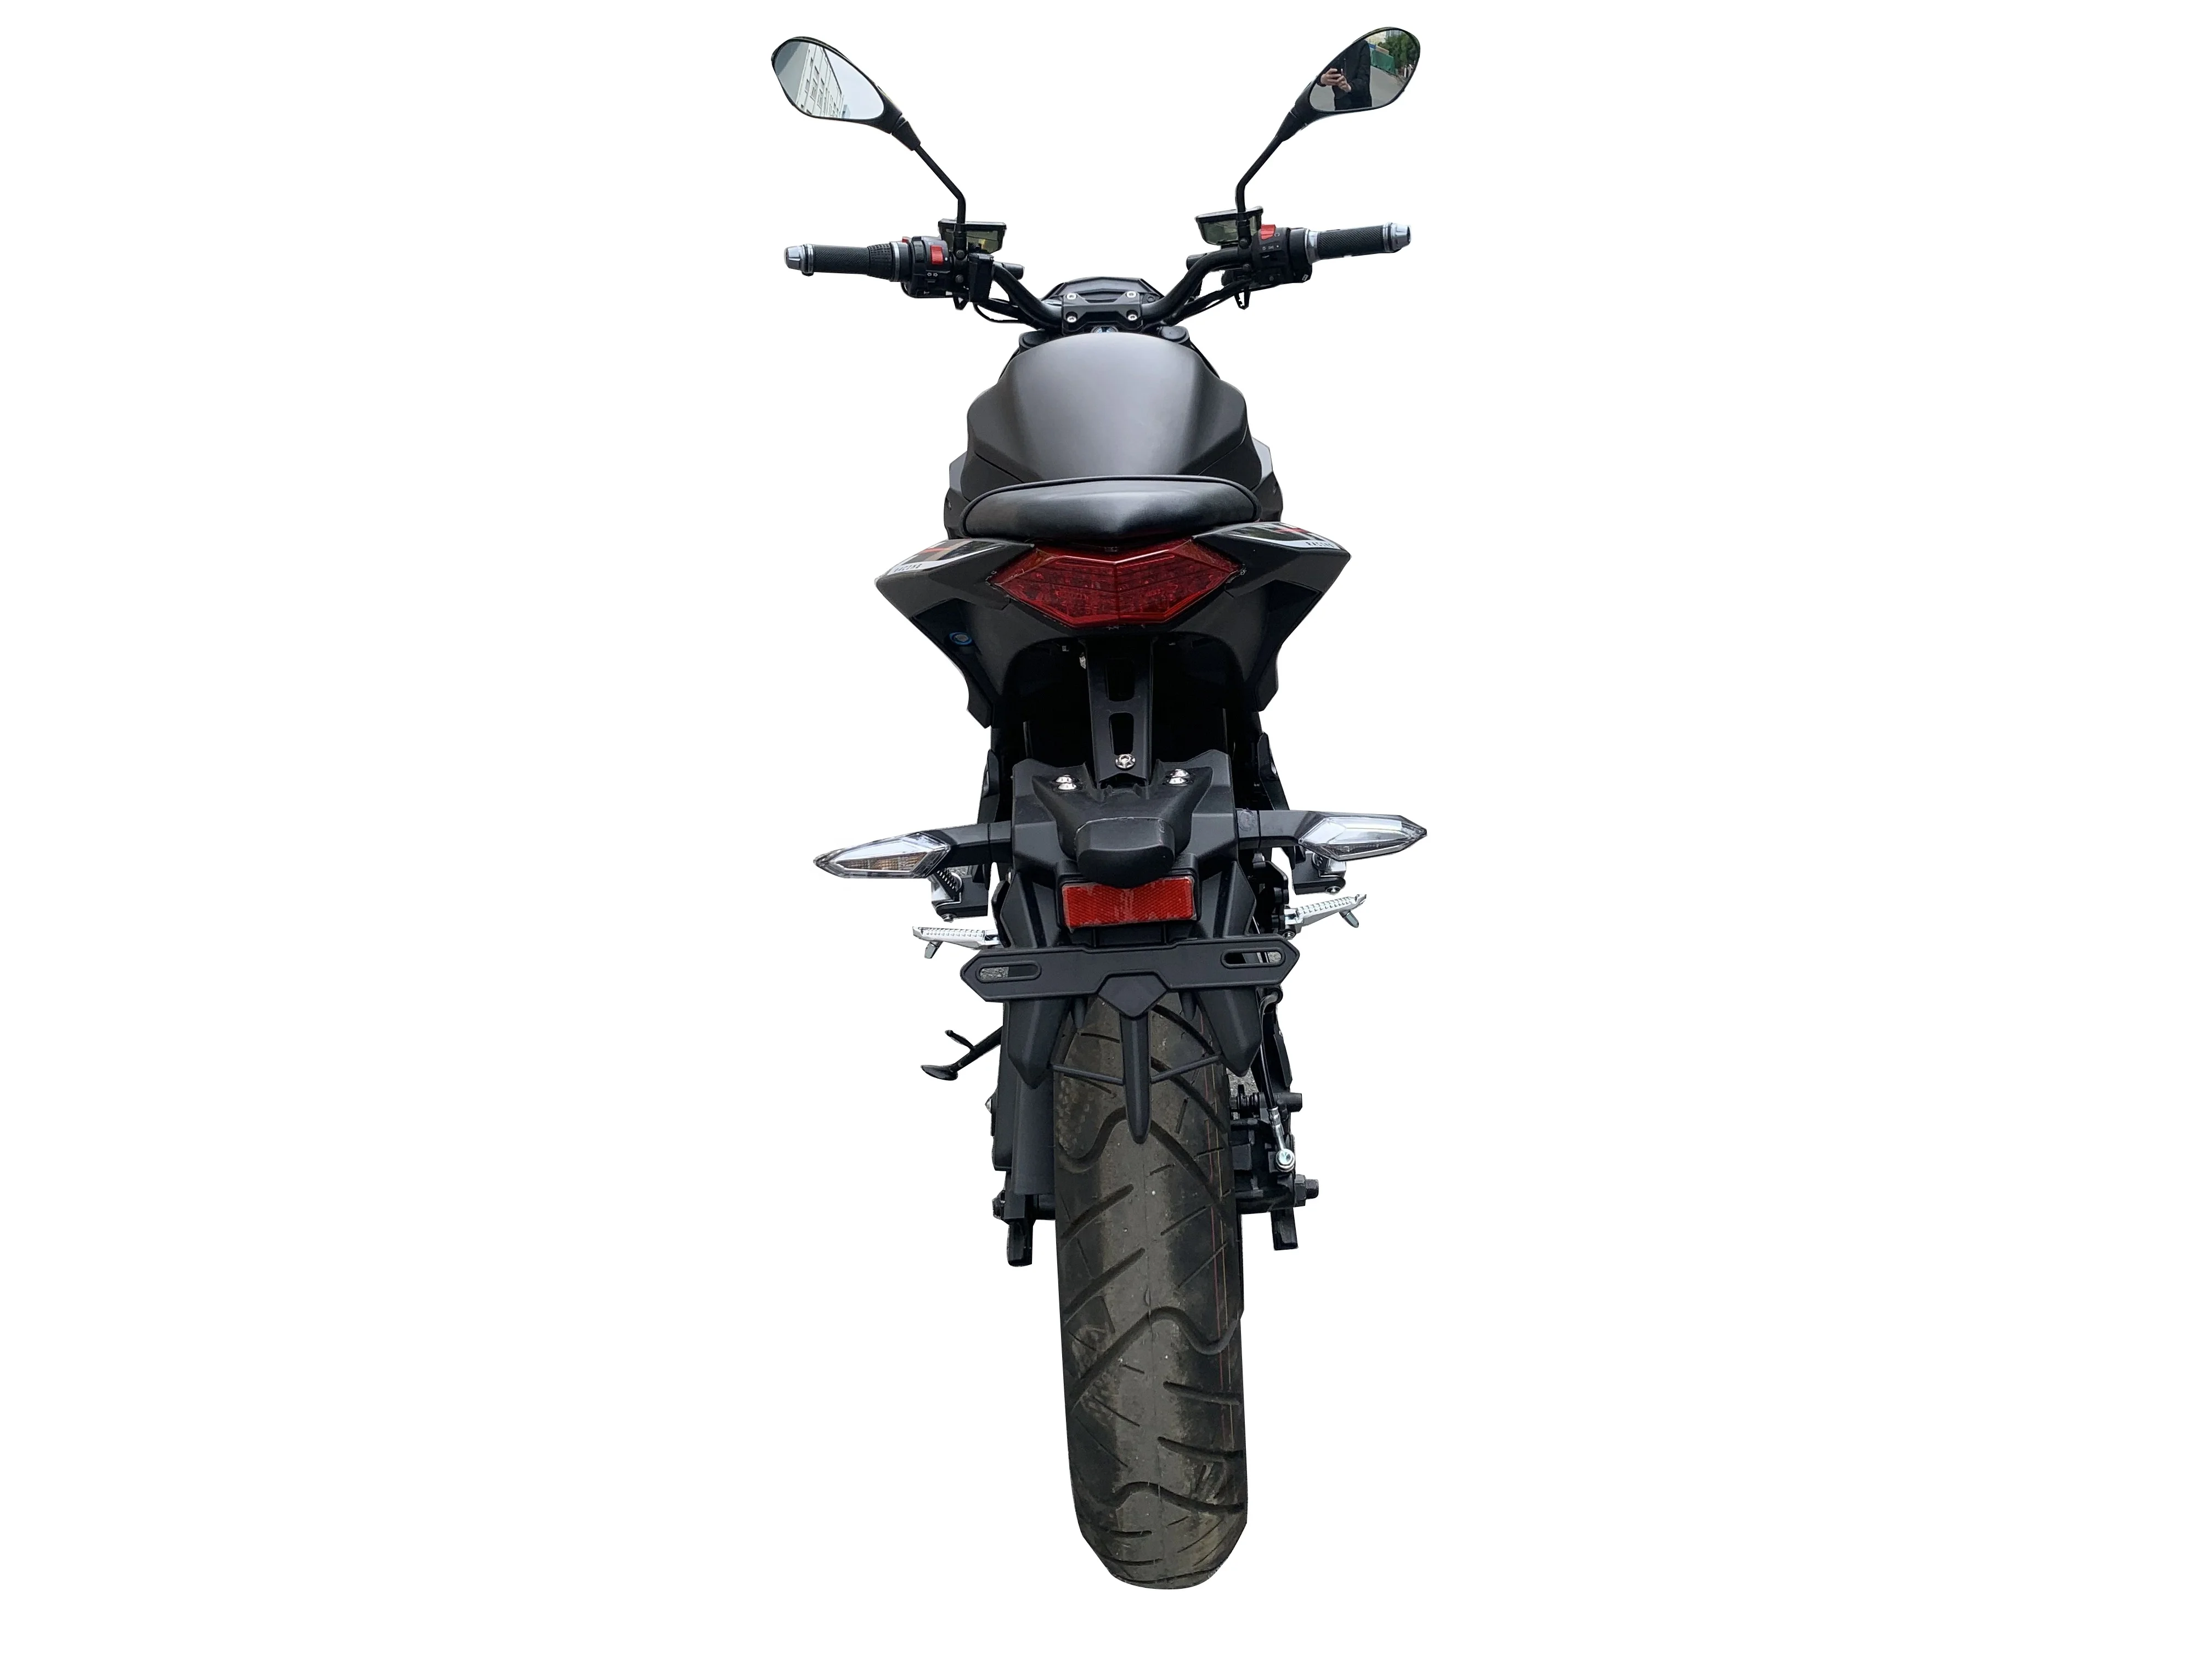 חם מכירה זולים חזק חשמלי אופנועים למבוגרים 3000W 60AH רחוב אופנועי מירוץ off-road